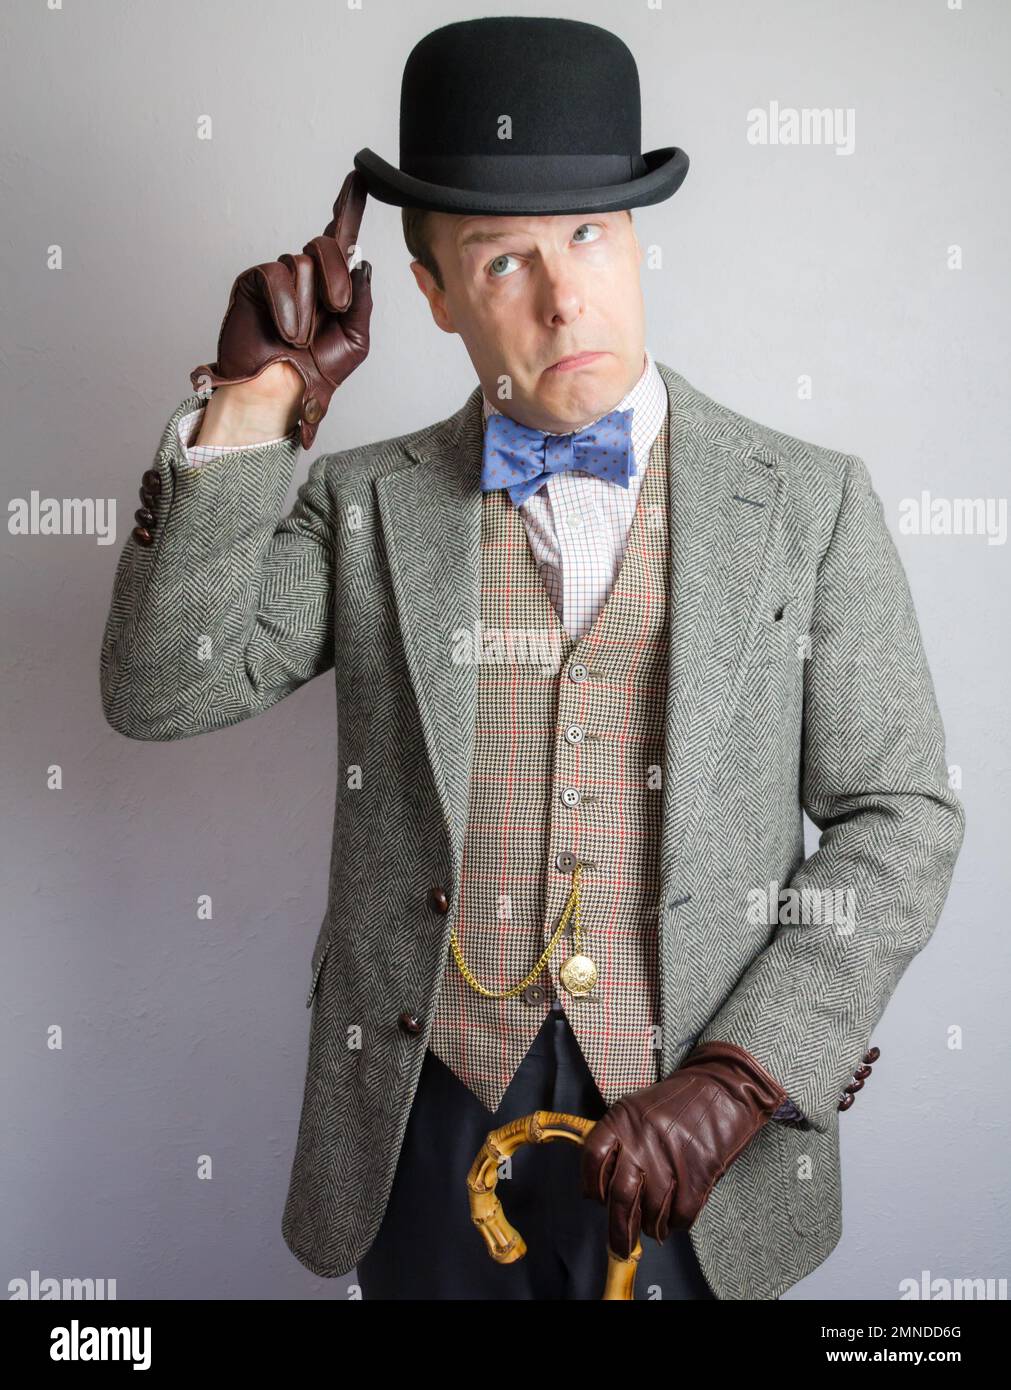 Porträt des britischen Charakters in Tweed-Anzug und Bowler-Hut. Konzept des Vintage Vaudeville Actor. Stockfoto